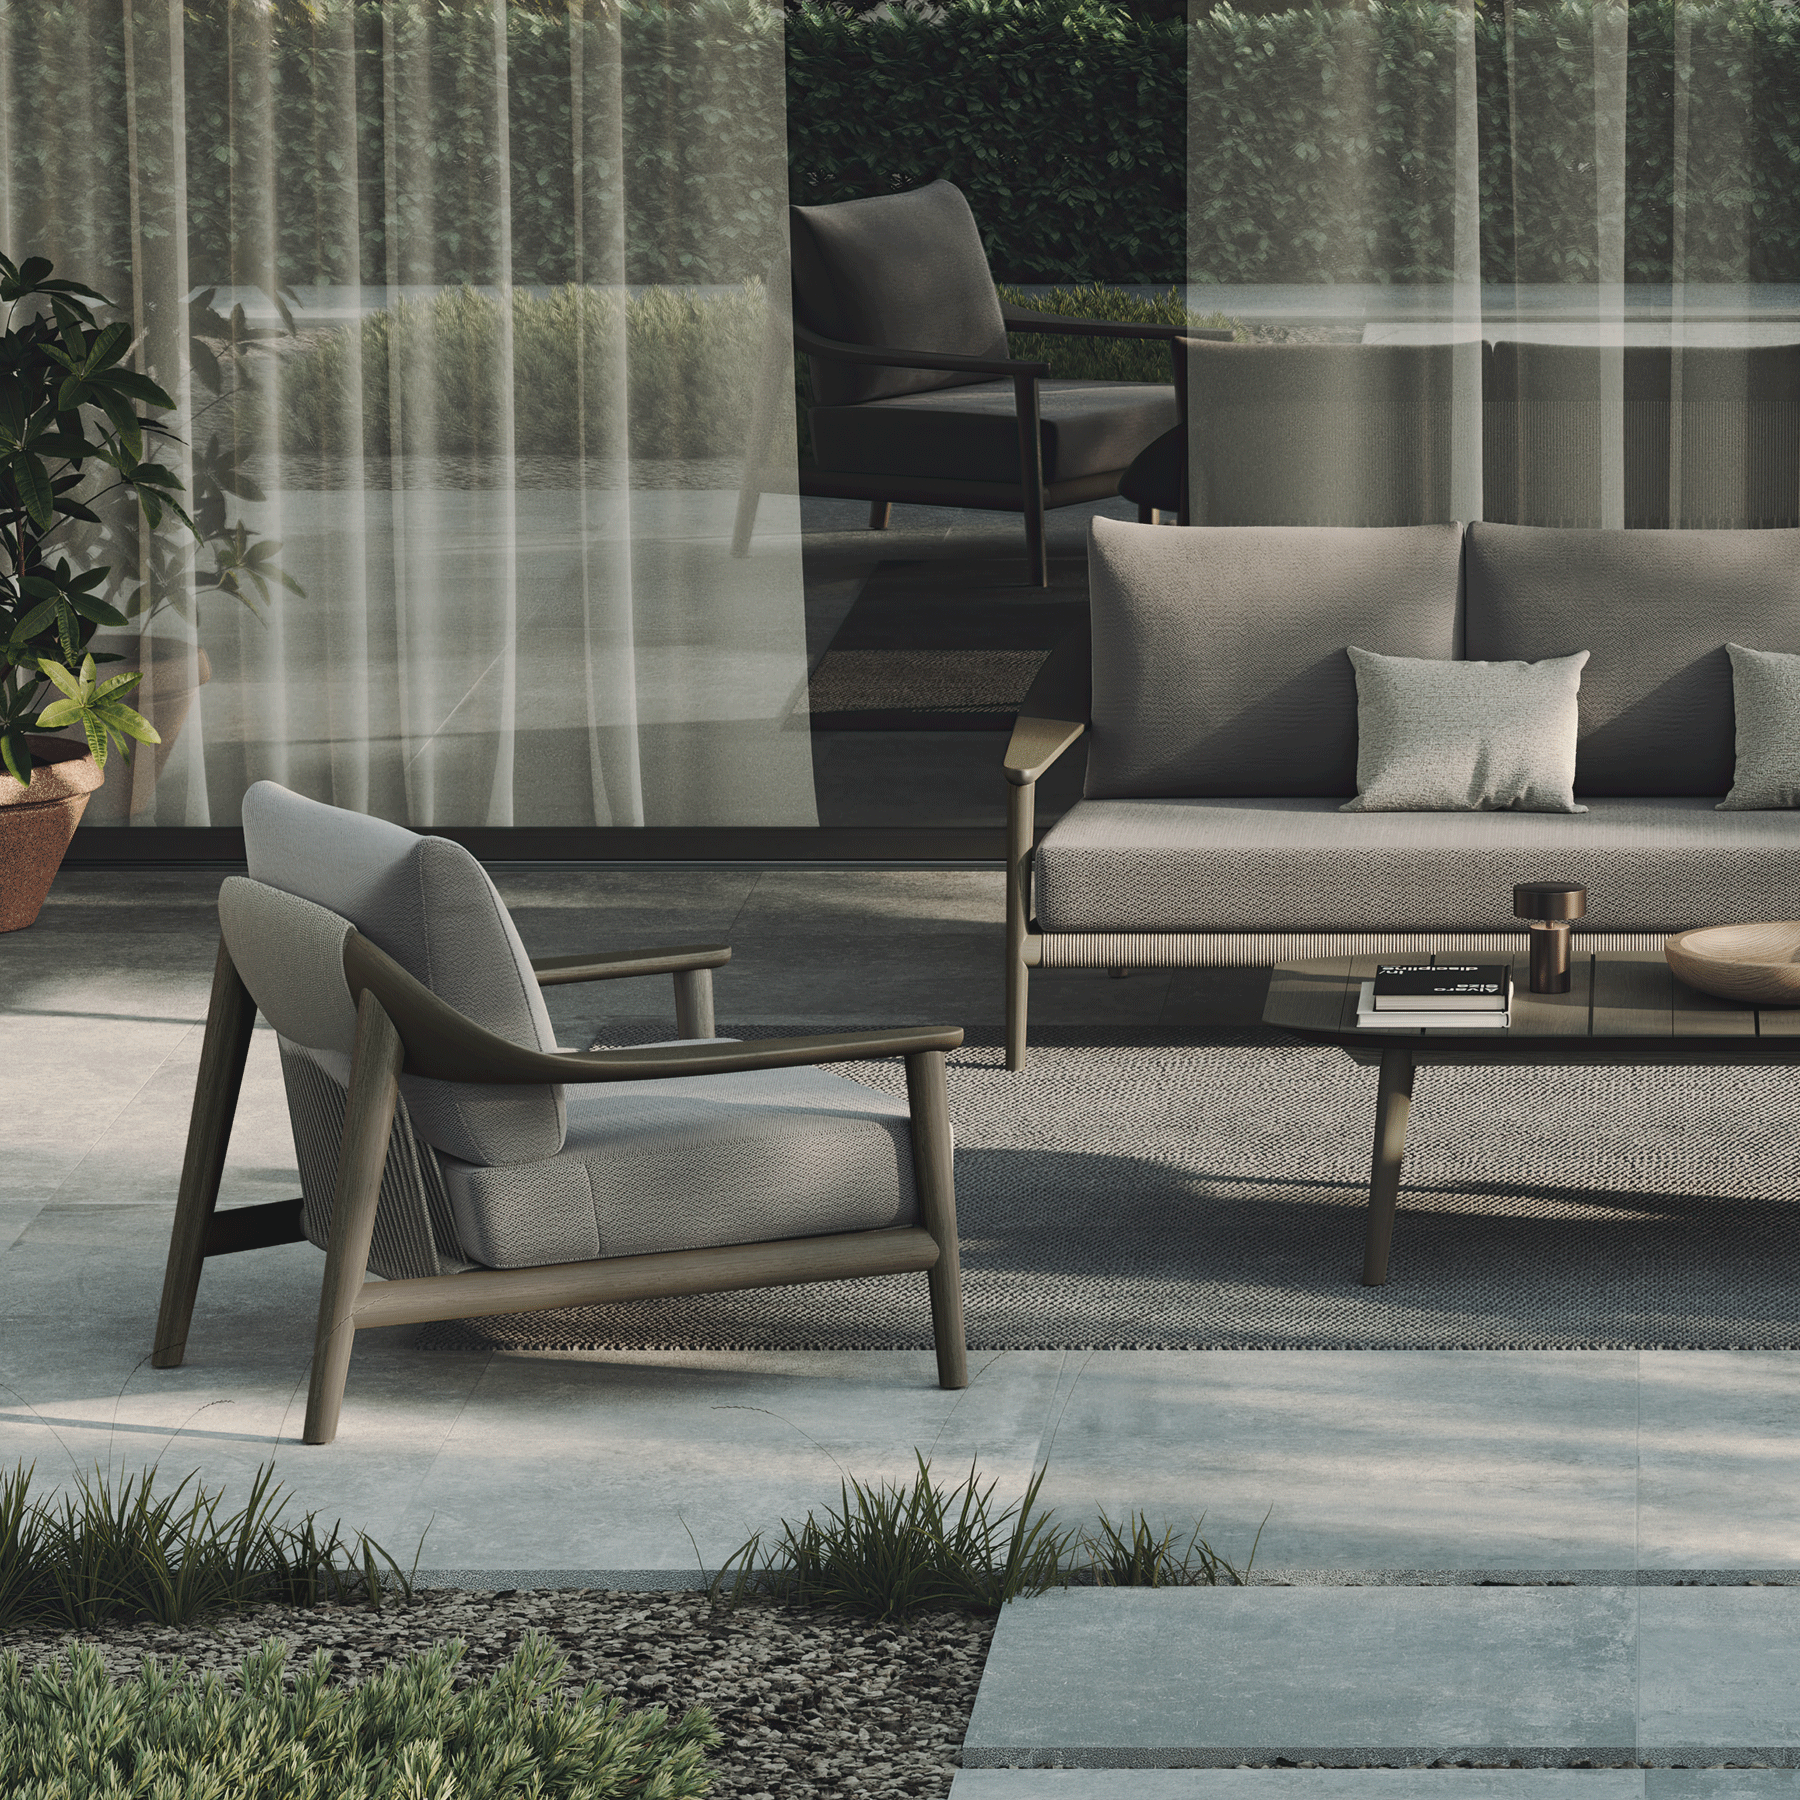 N1 luxury dark teak outdoor furniture with mid century inspired rope detail 